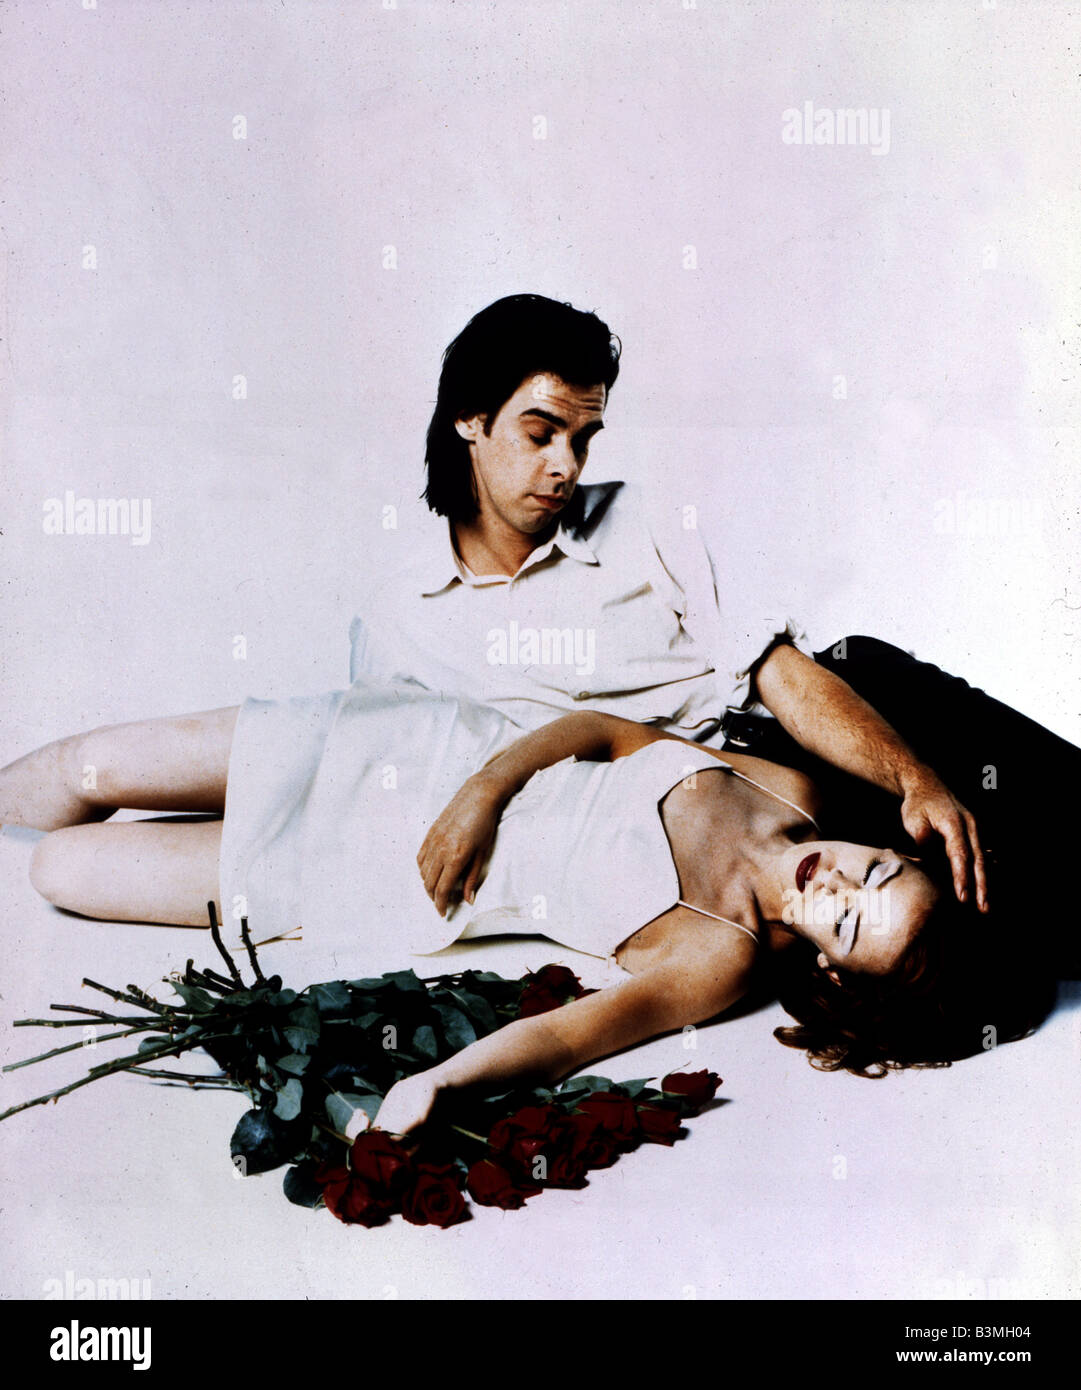 KYLIE MINOGUE e Nick Cave in ottobre 1995 promozione dove Le rose  selvatiche crescono Foto stock - Alamy